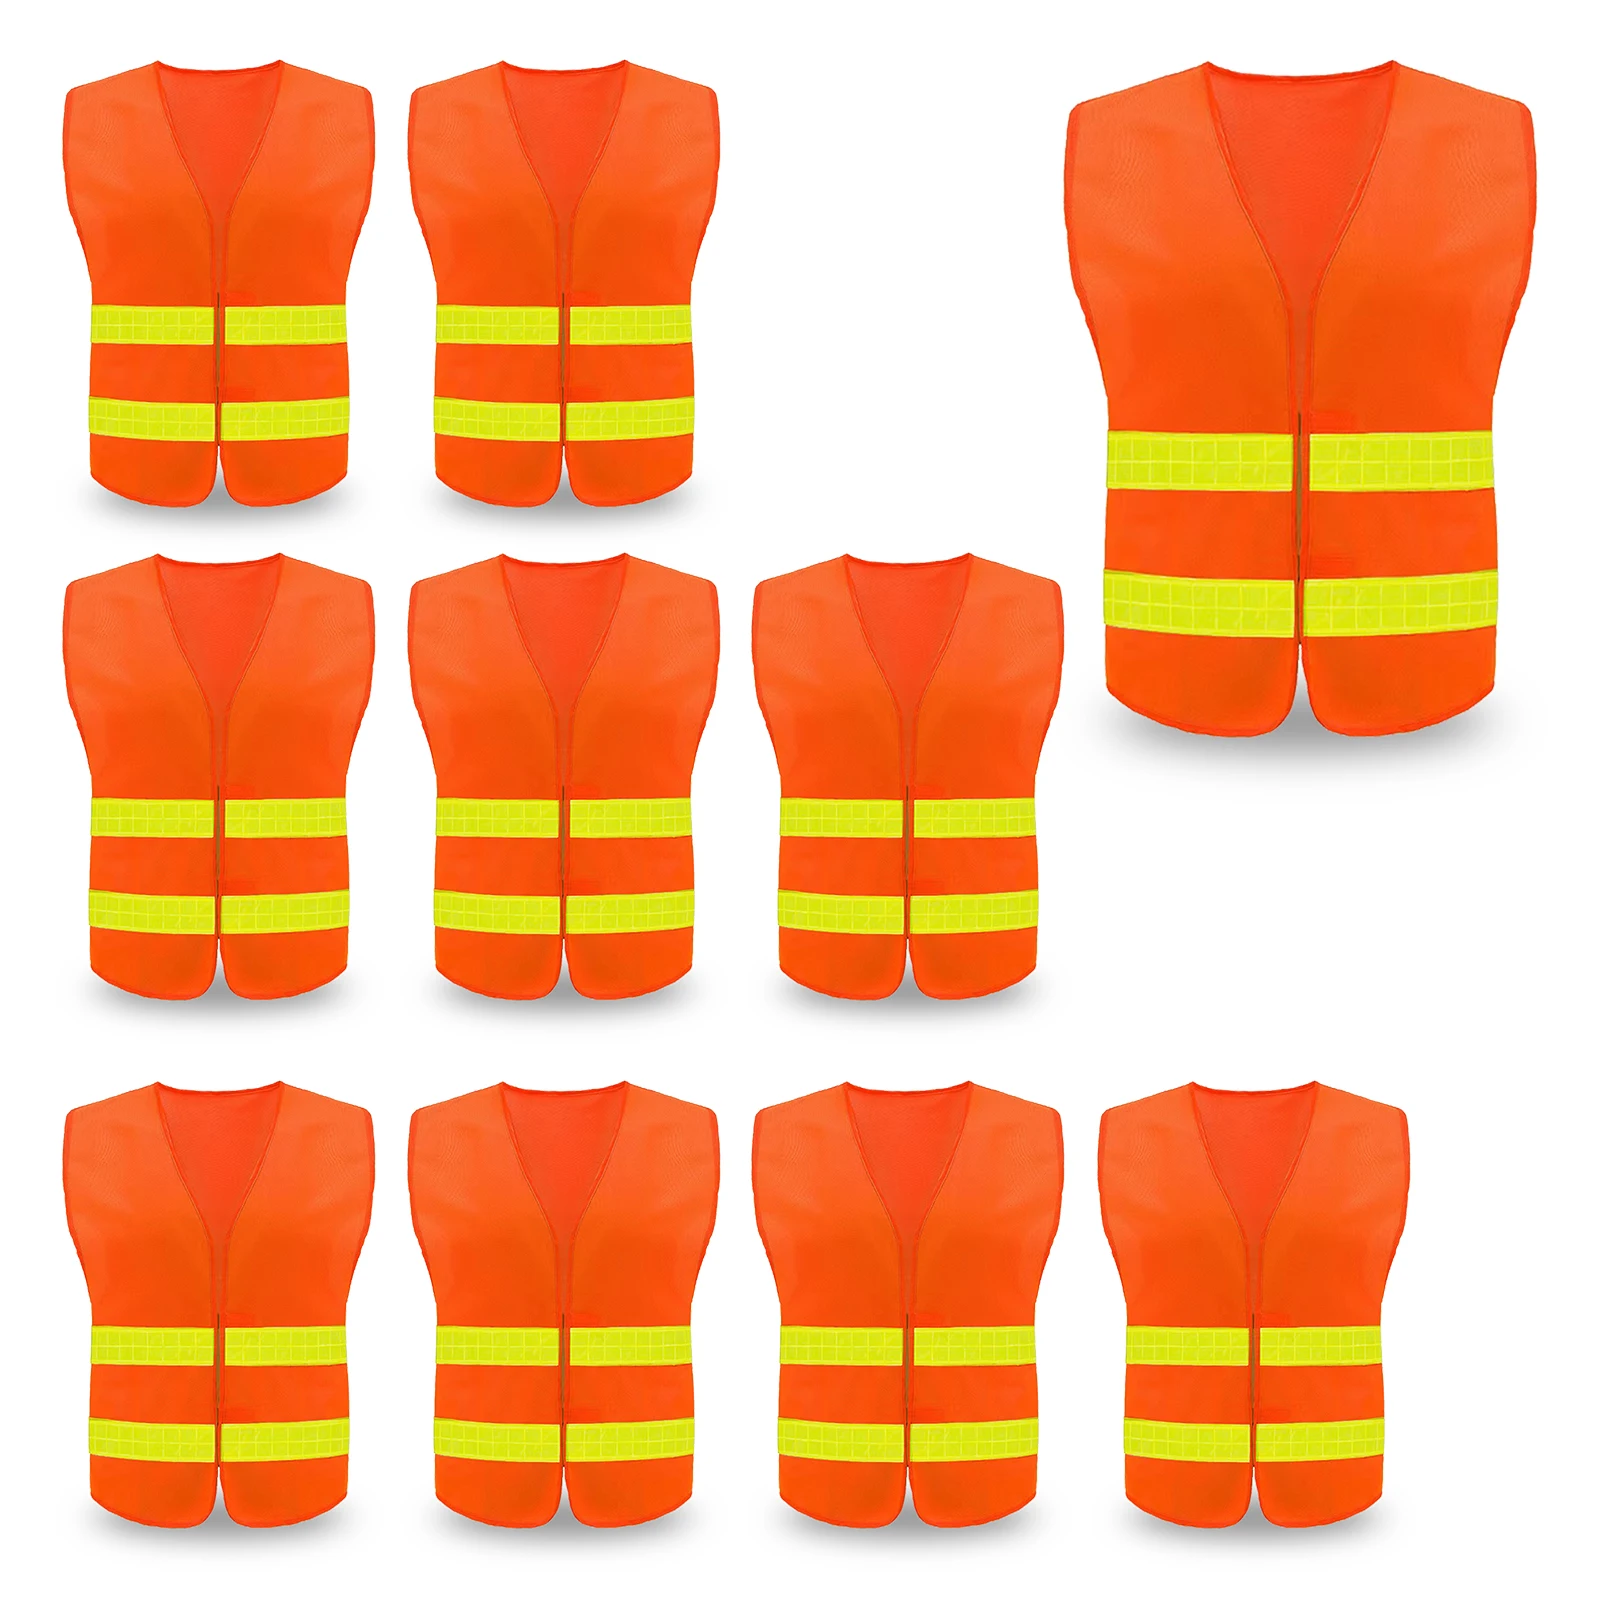 

10 Pack Safety Vest, Reflective High Visibility Construction Vest for Men, Work, Cycling, Runner, Surveyor, Volunteer, Road